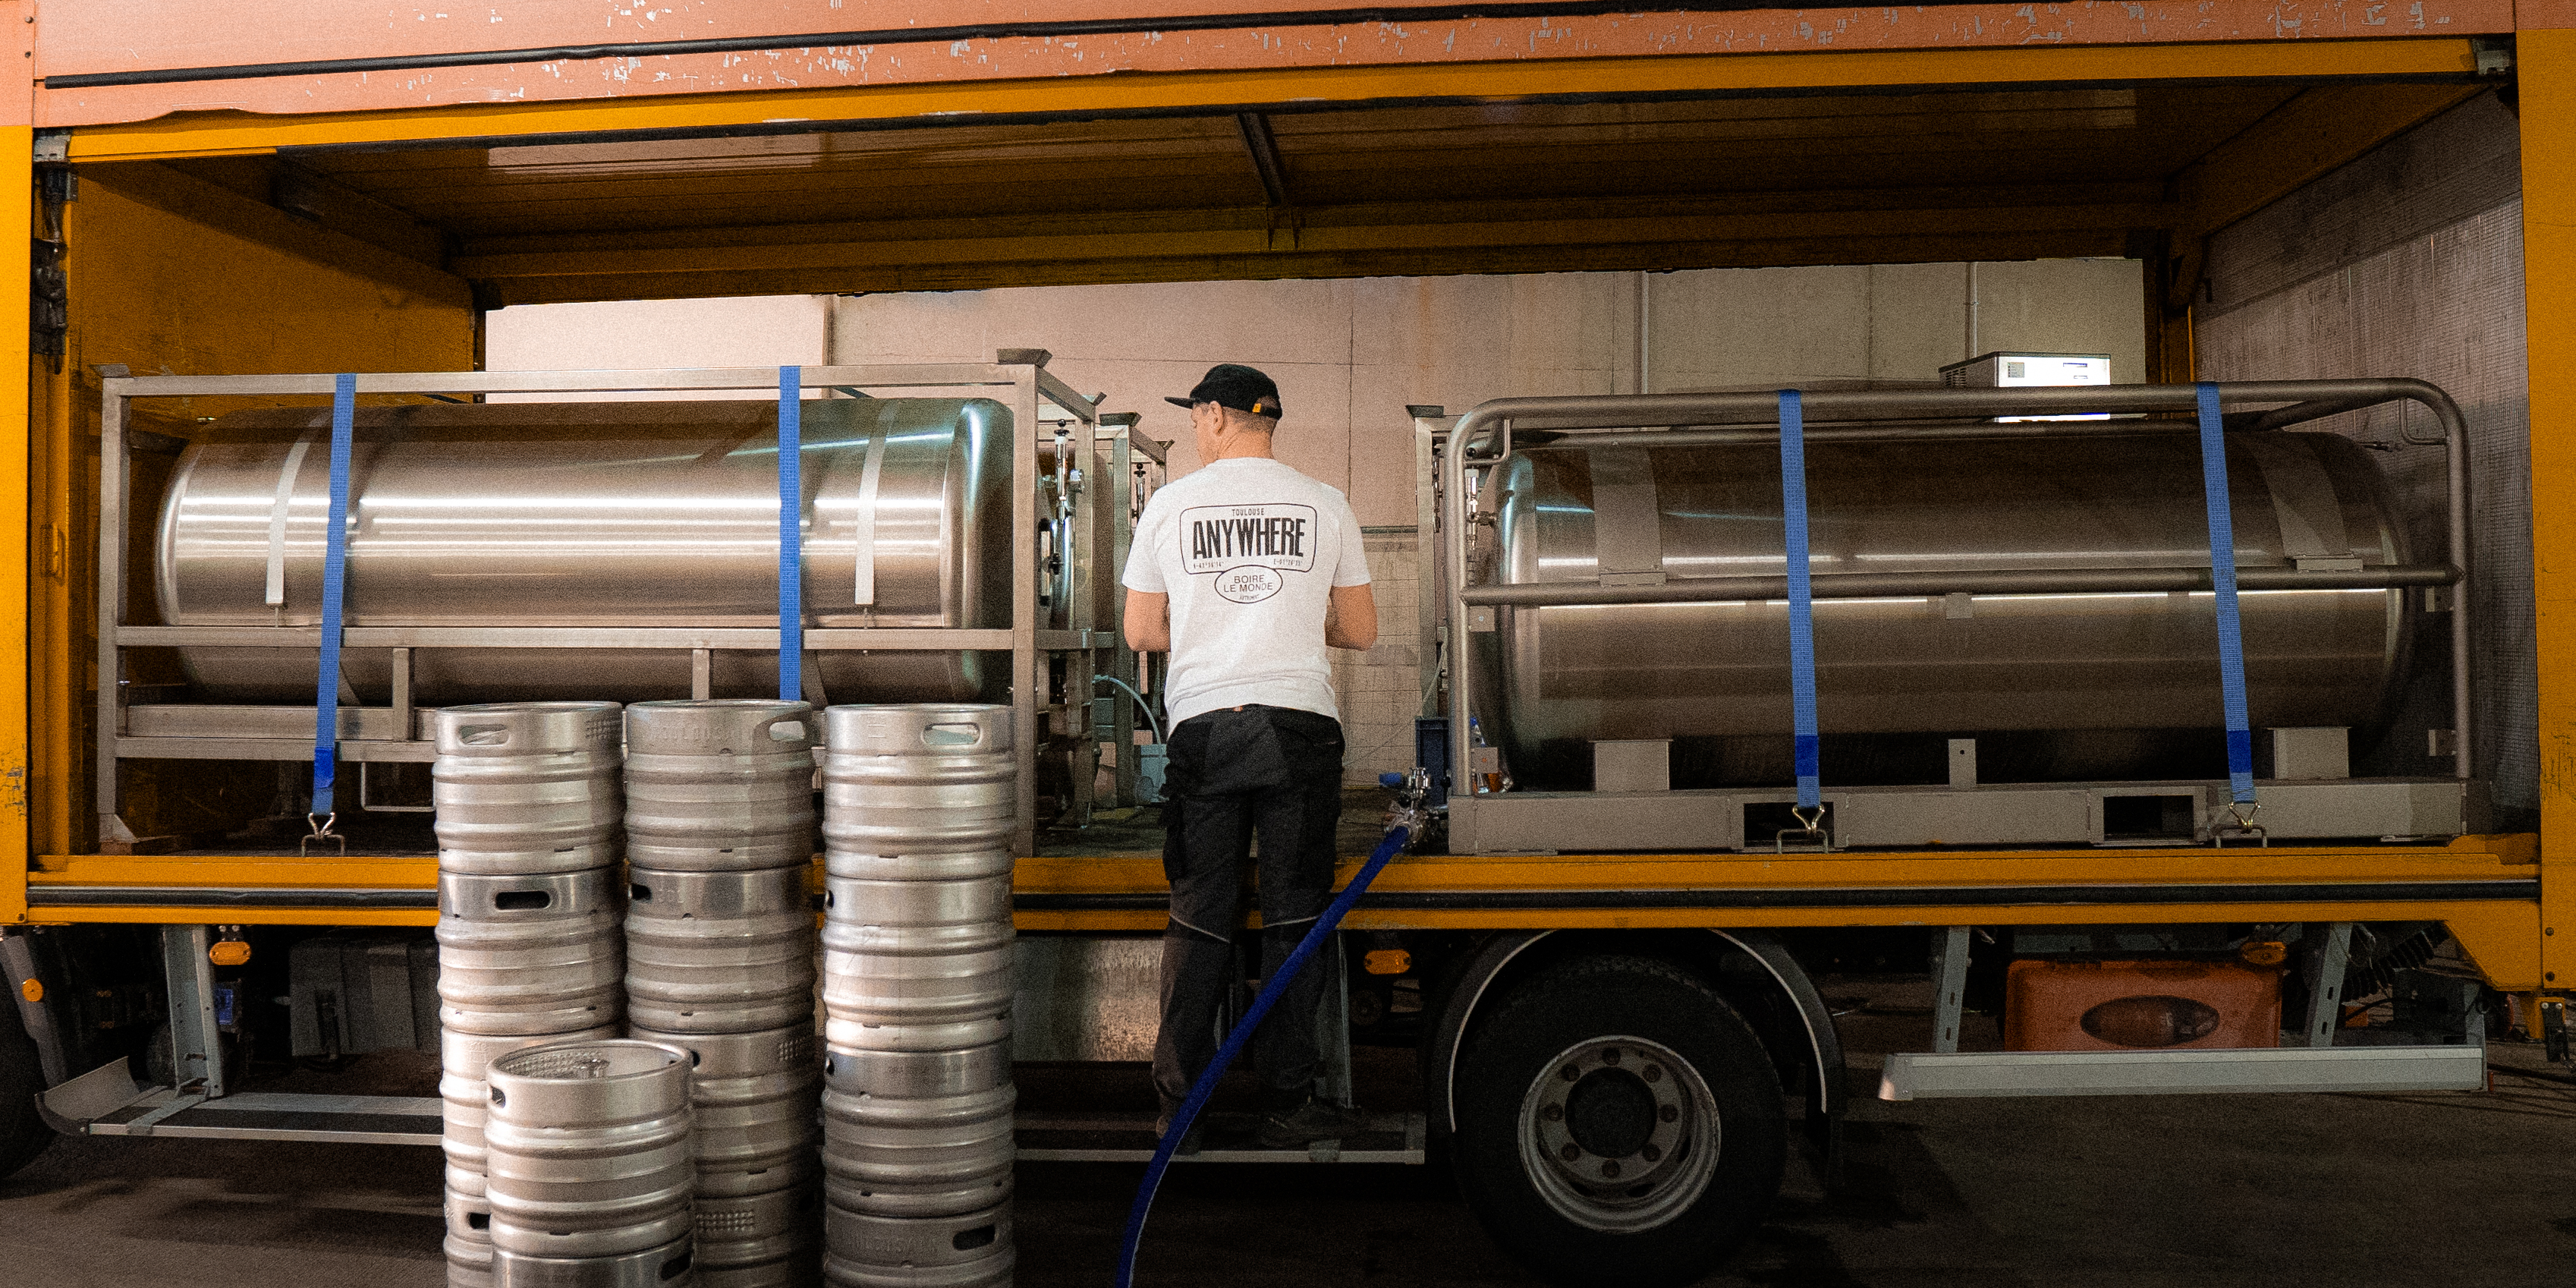 Les dirigeants d'Anywhere Beer Factory visent une production de 4500 hectolitres de bière par an. (Photo : Anywhere Beer Factory)